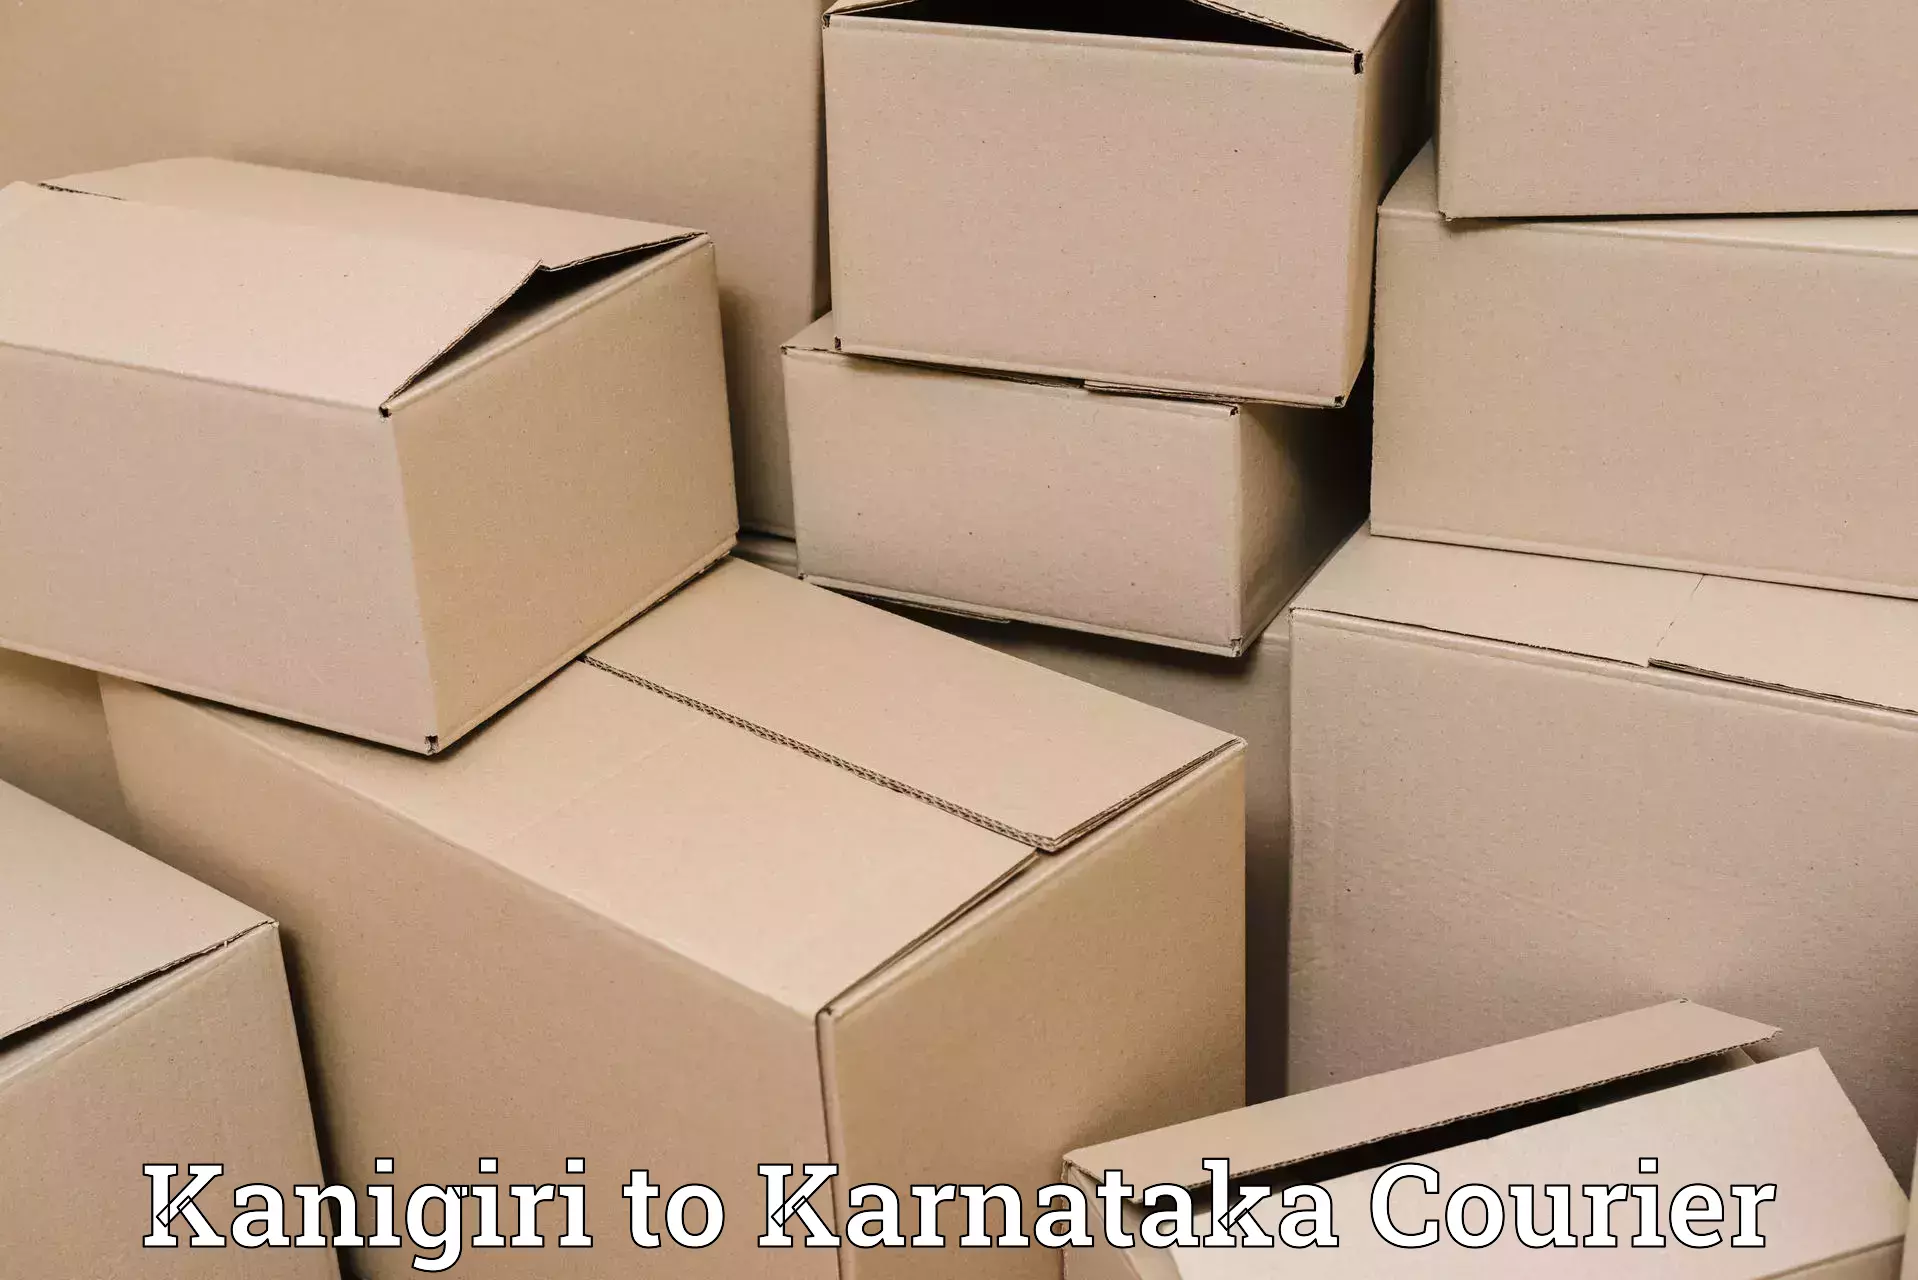 Global logistics network Kanigiri to Thirthahalli